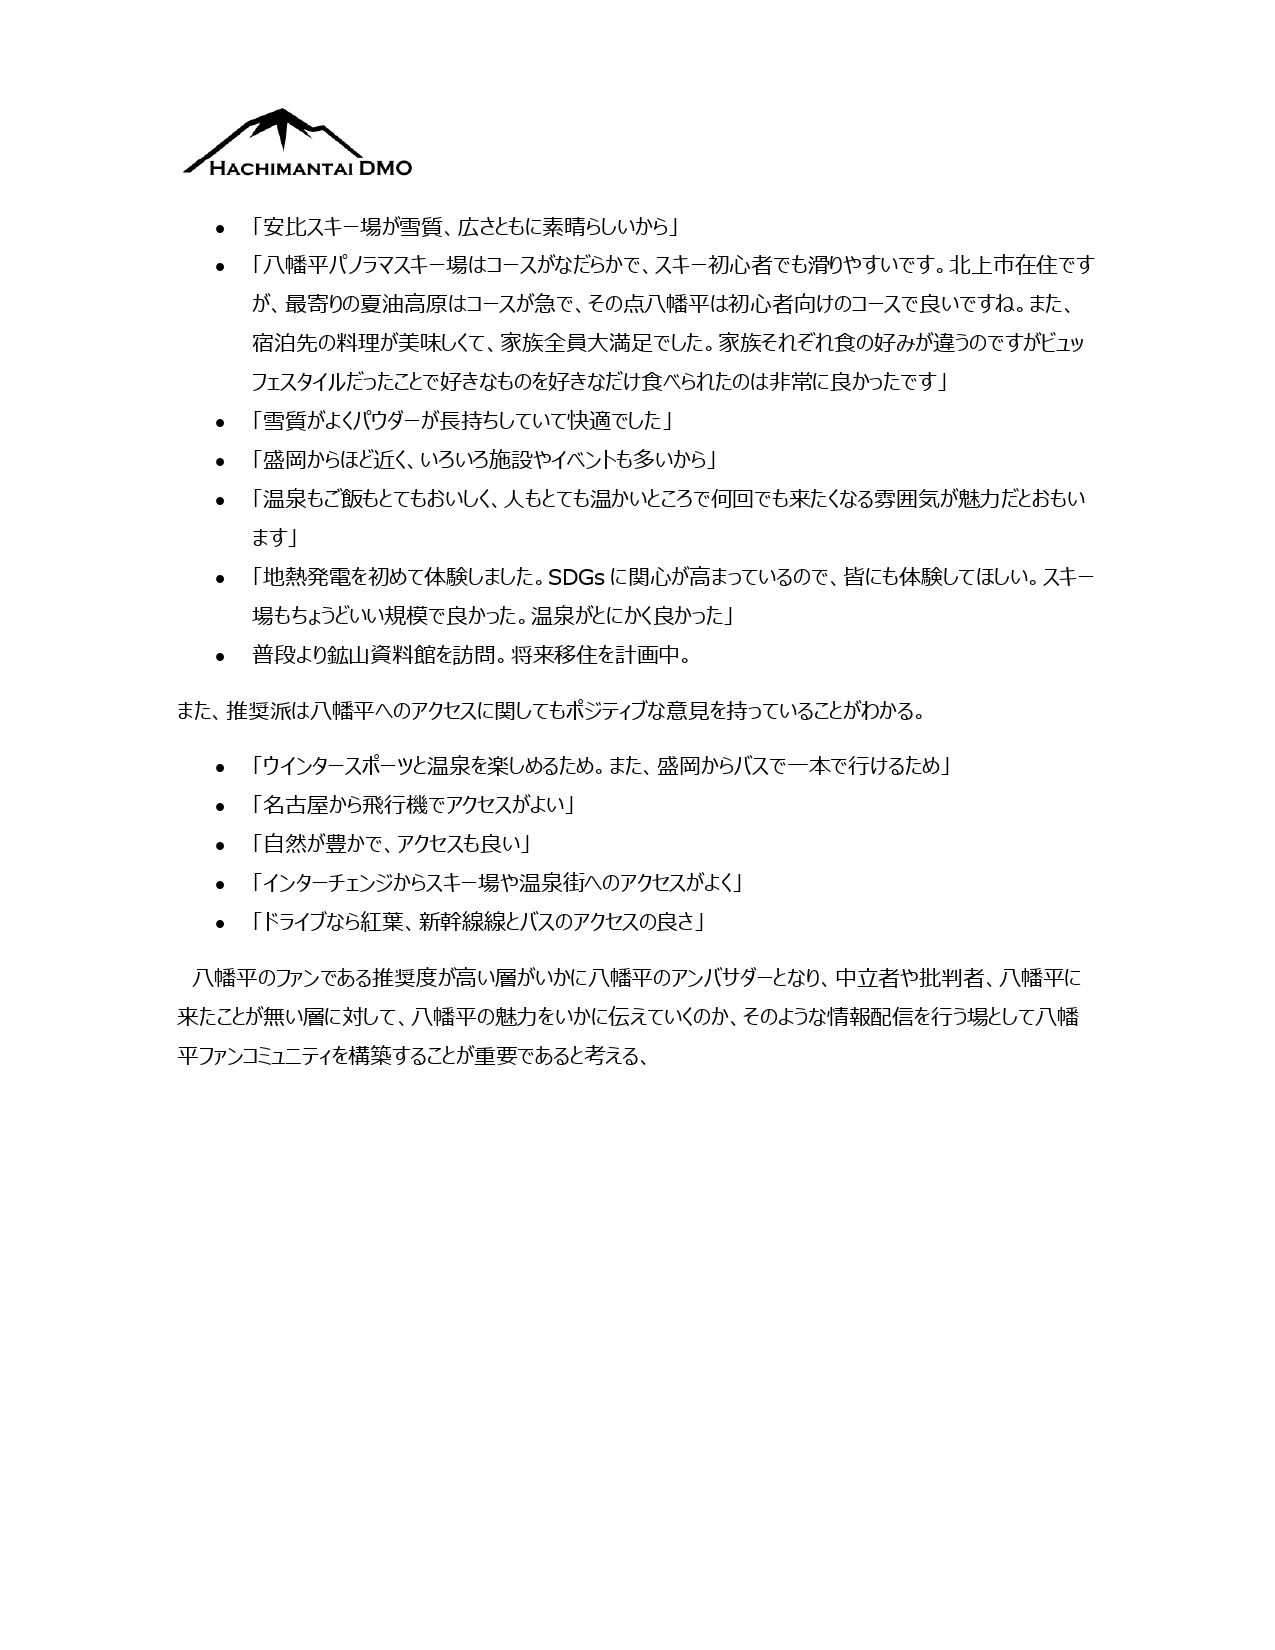 八幡平DMOマンスリーレポート 1月_page-0009